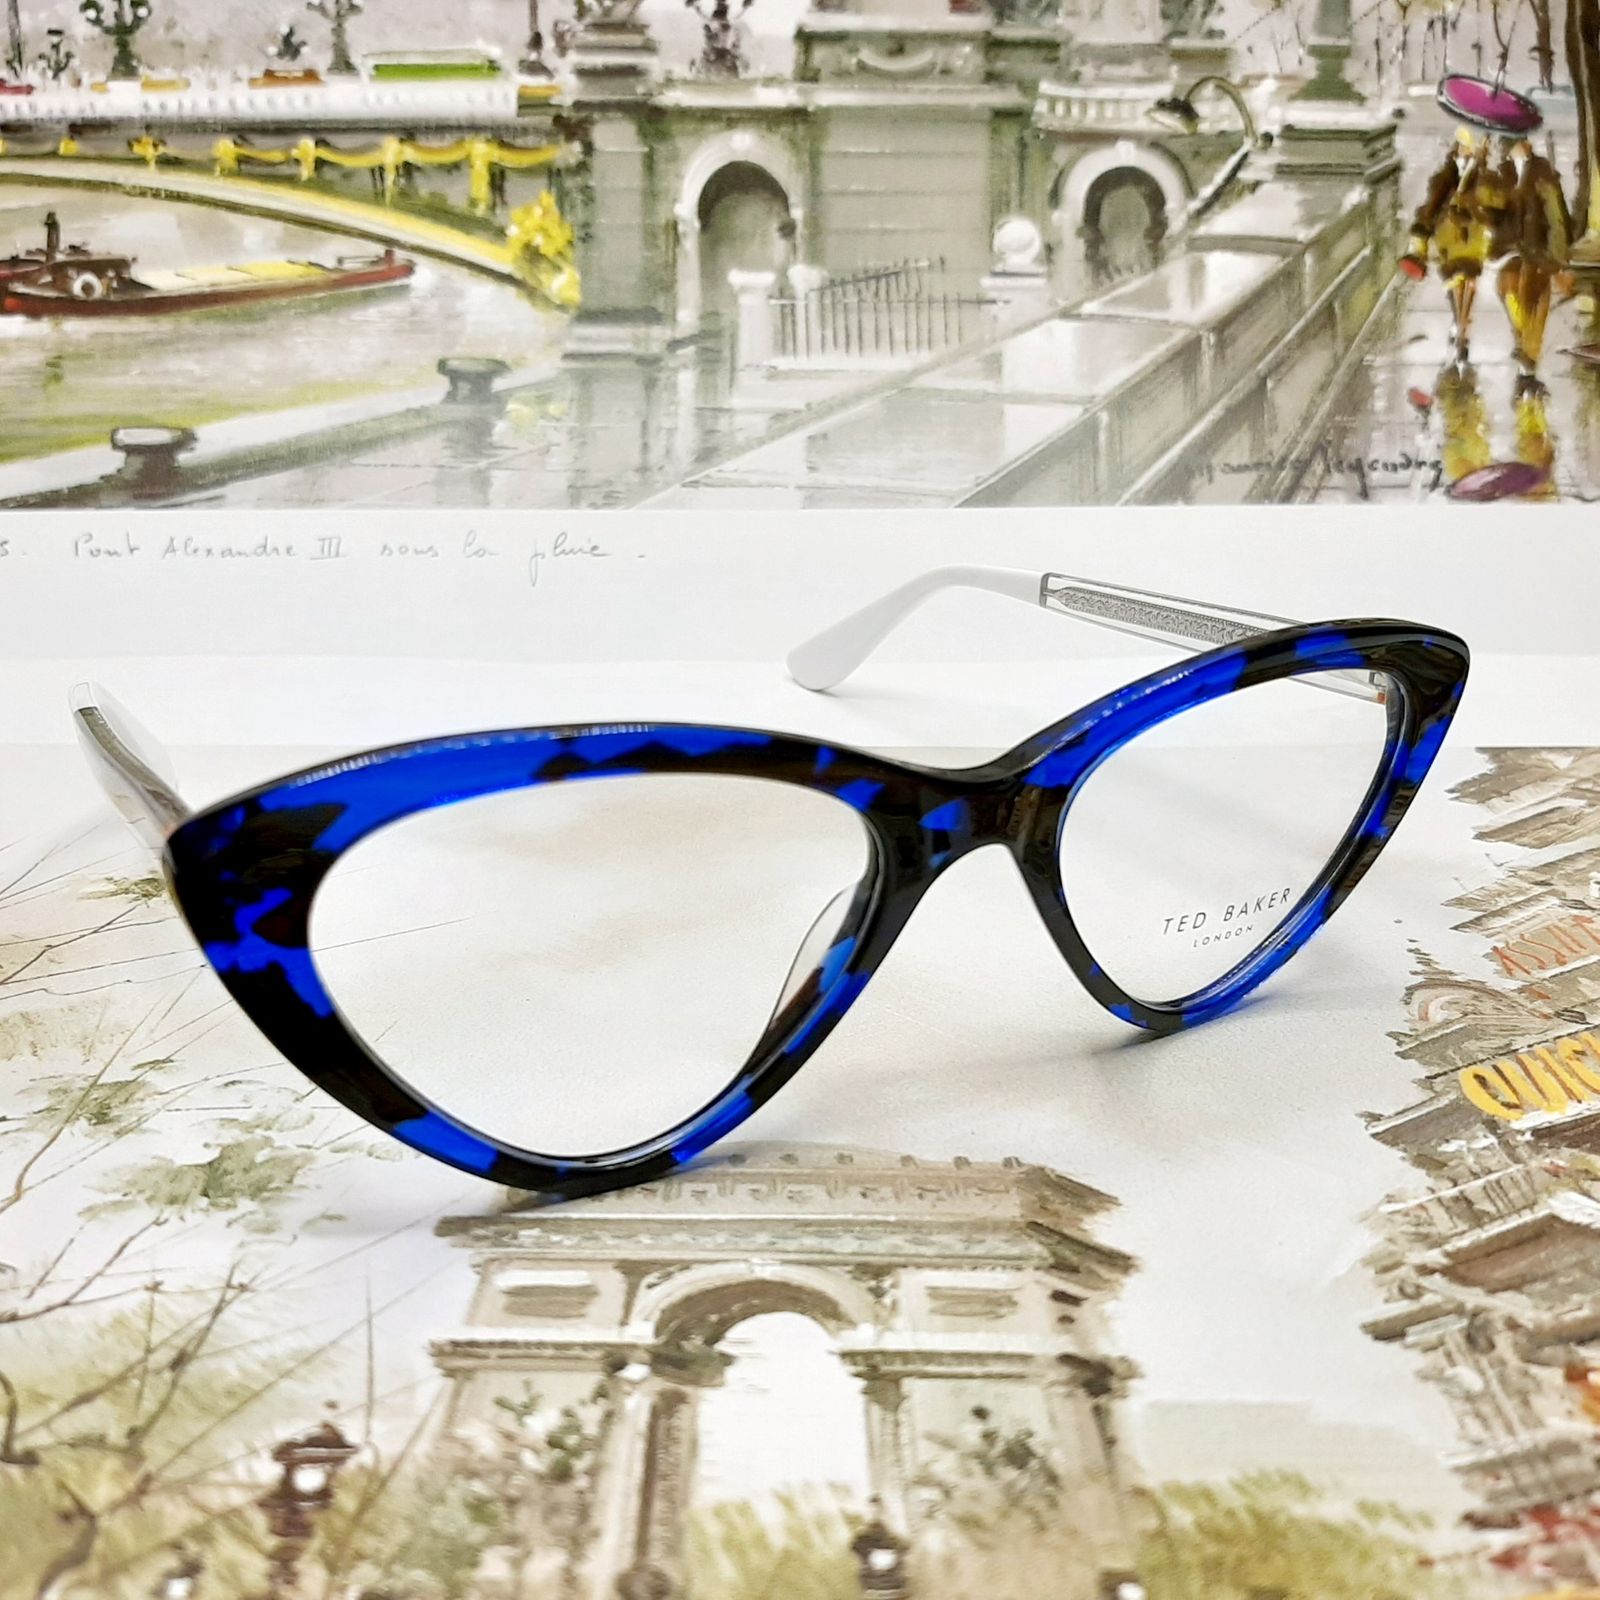 فریم عینک طبی زنانه تد بیکر مدل FG1144c4 -  - 4